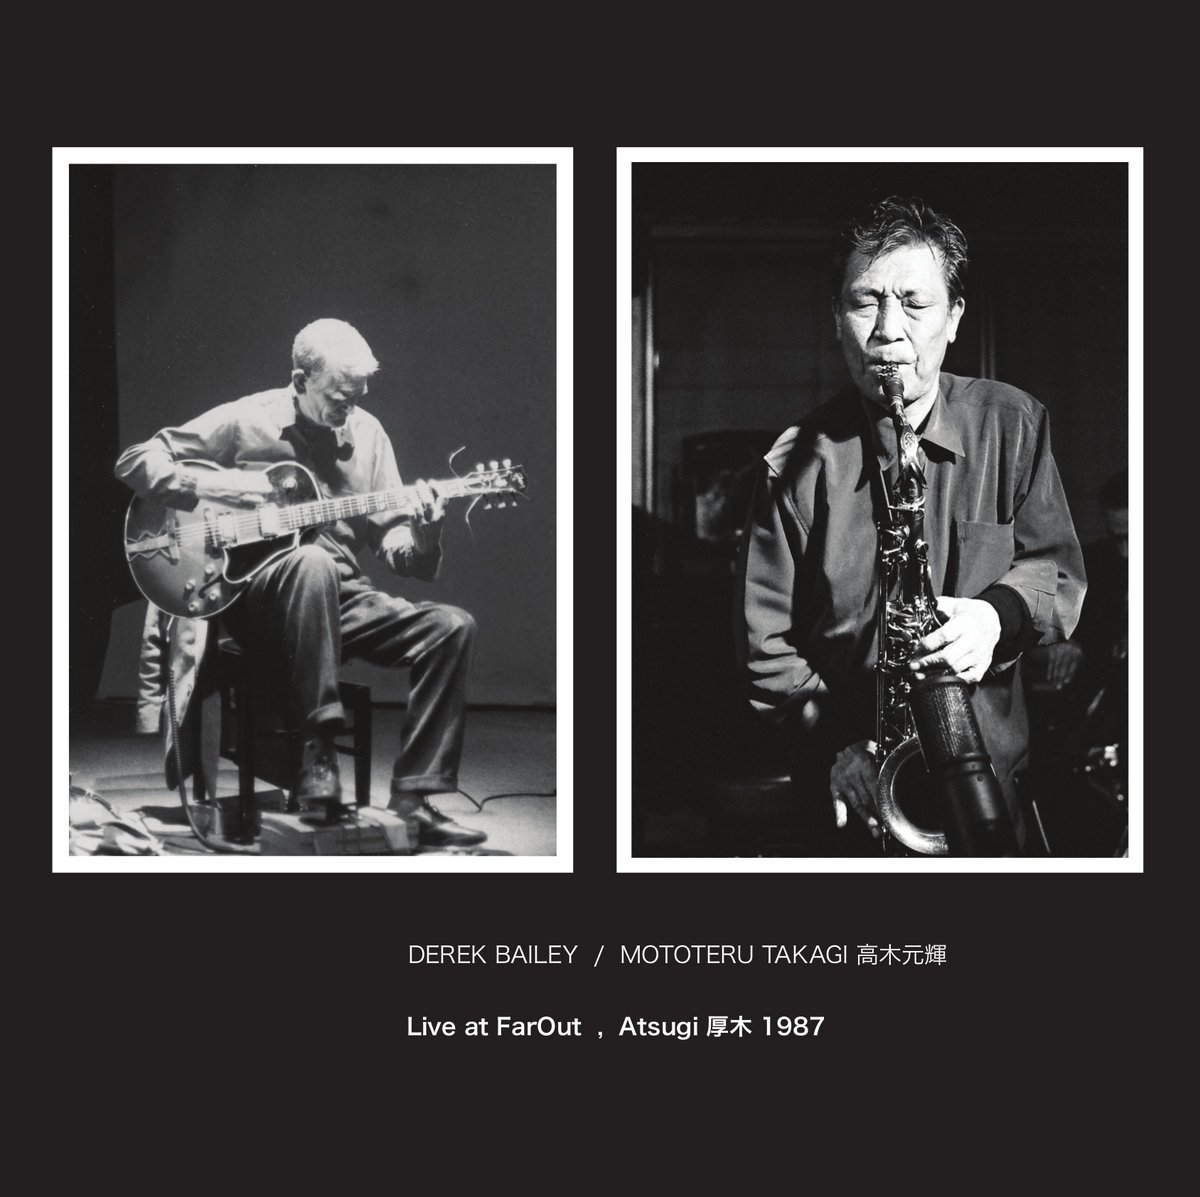   Derek Bailey / Mototeru Takagi -  Live at FarOut, Atsugi 1987  [NoBusiness]  